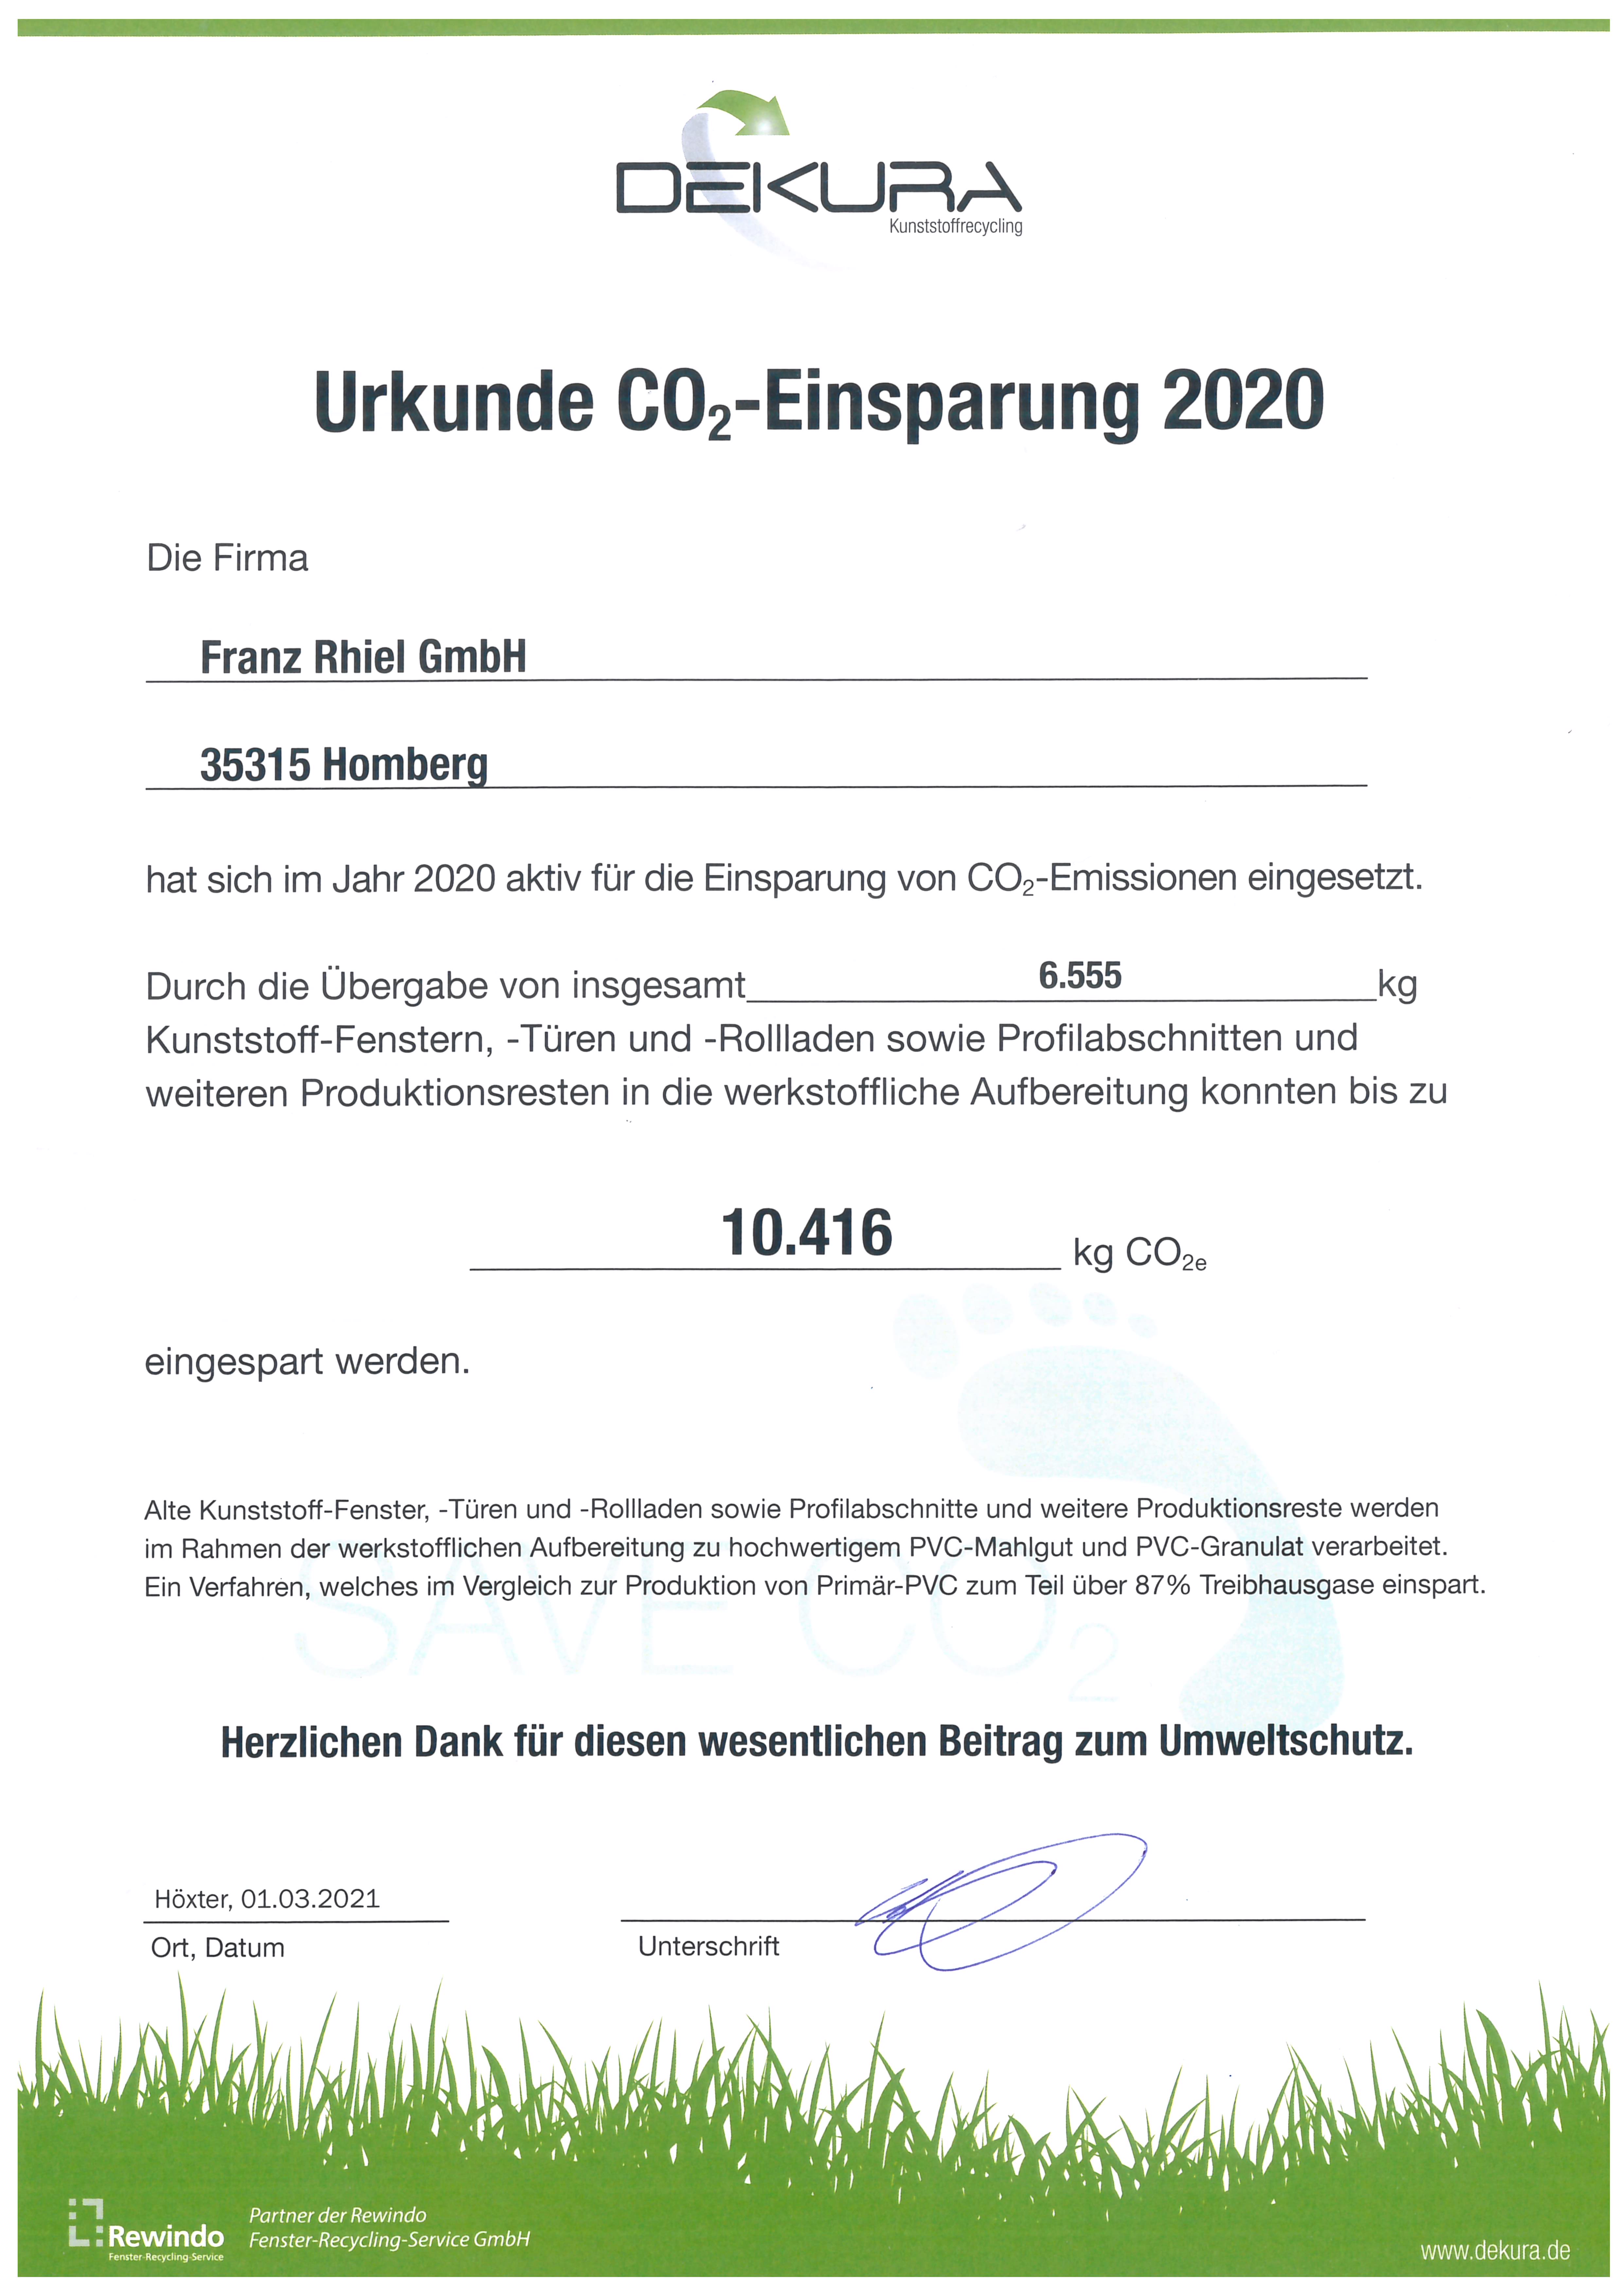 Urkunde Co2-Einsparung 2020 Homberg